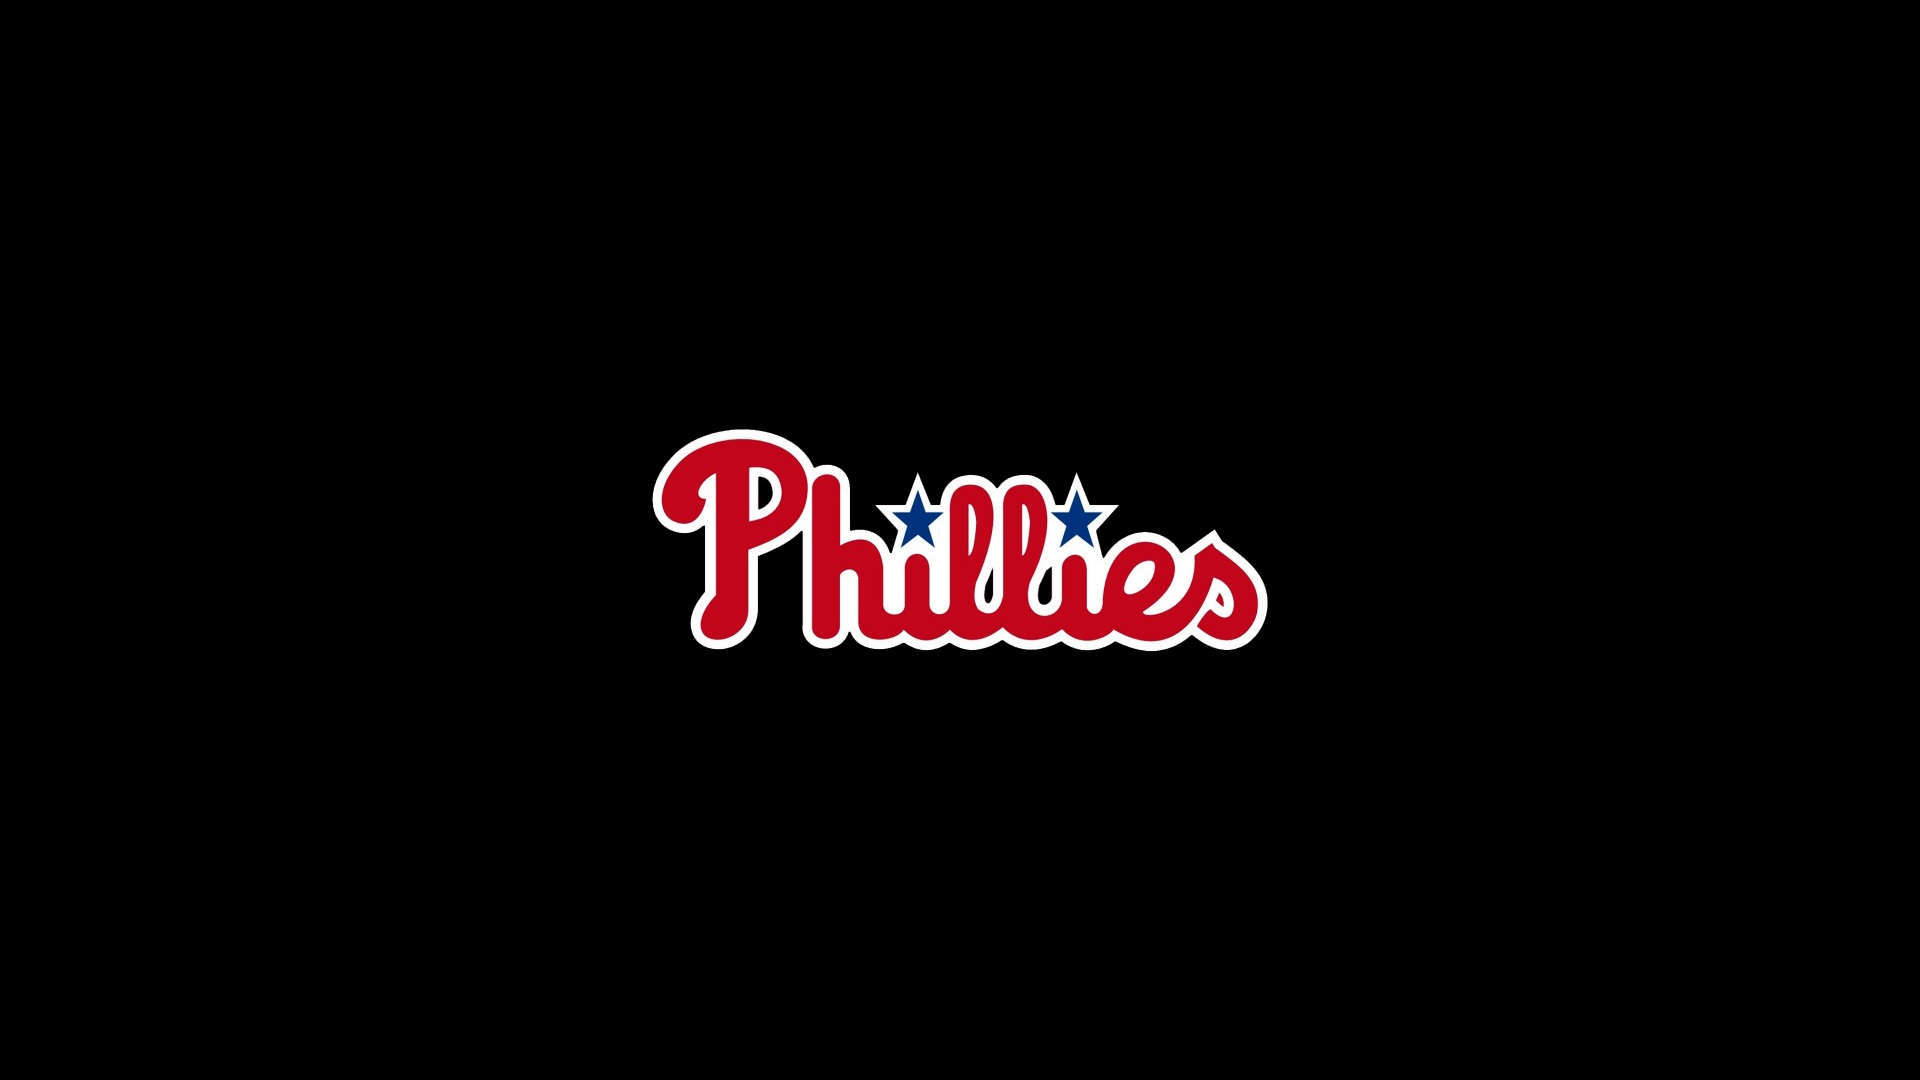 Phillies Philadelphia Wallpaper For Puter